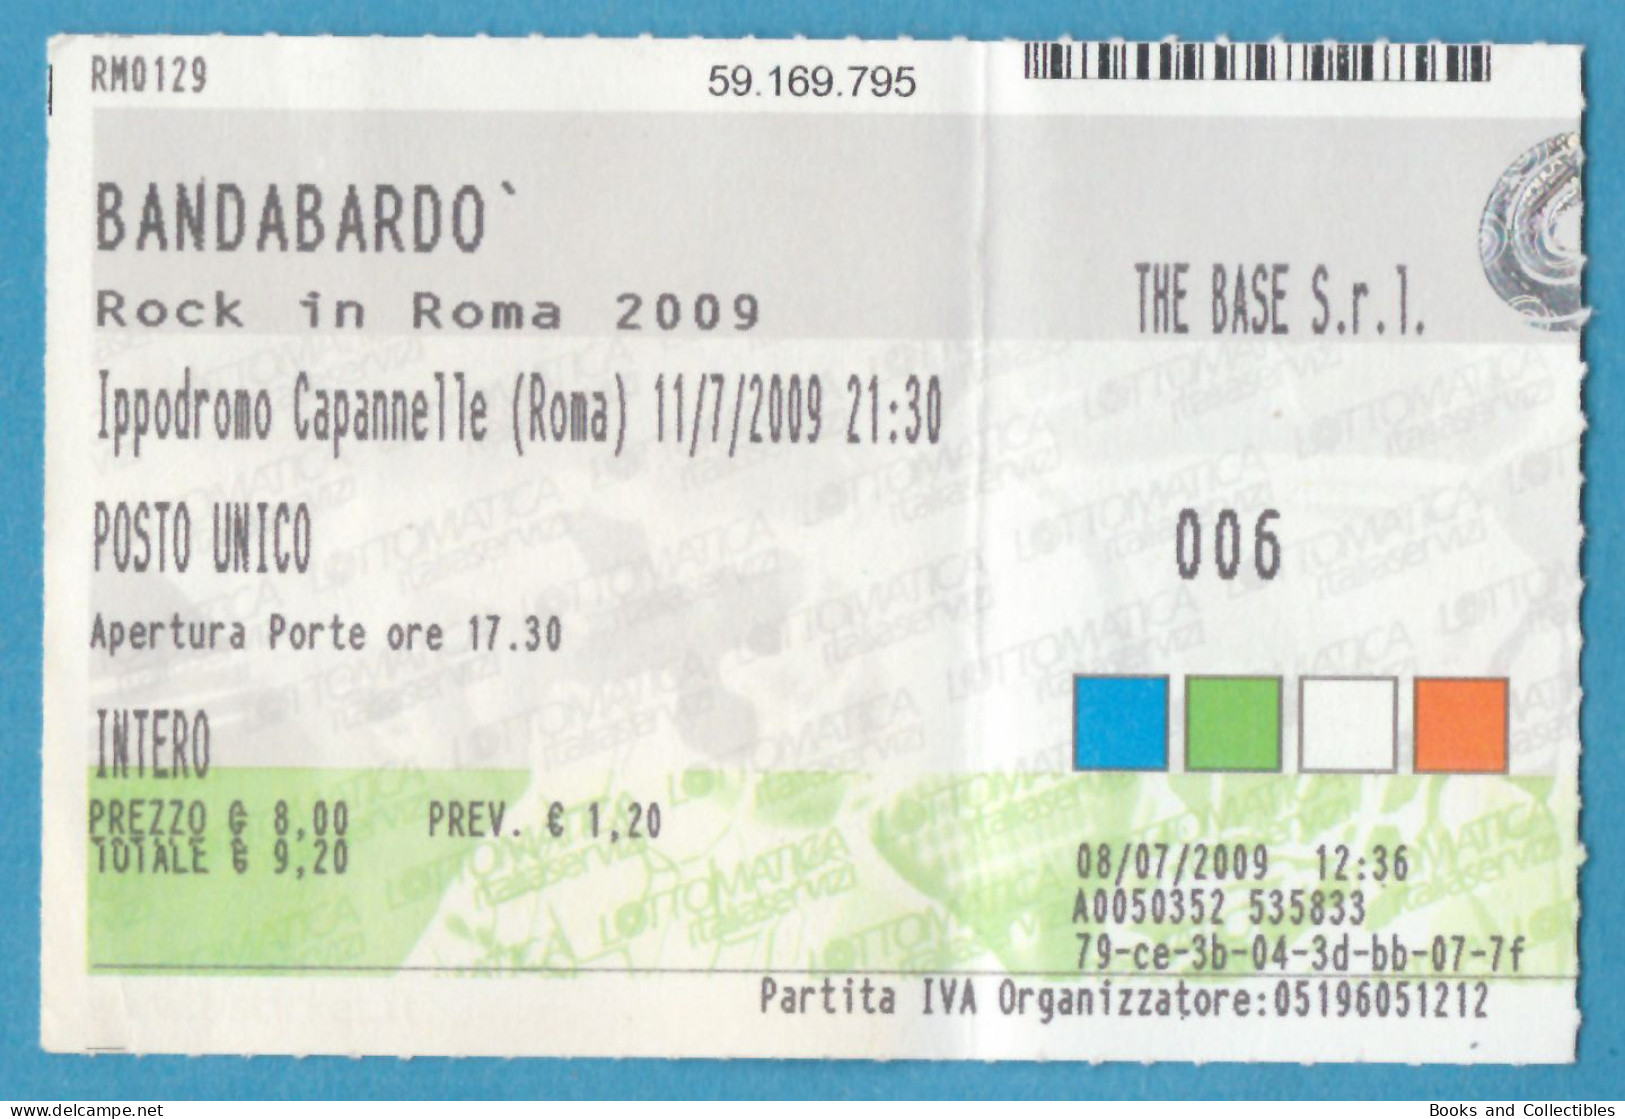 Q-4500 * BANDABARDÒ - Rock In Roma, Ippodromo Delle Capannelle (Italy) - 11 Luglio 2009 - Concert Tickets